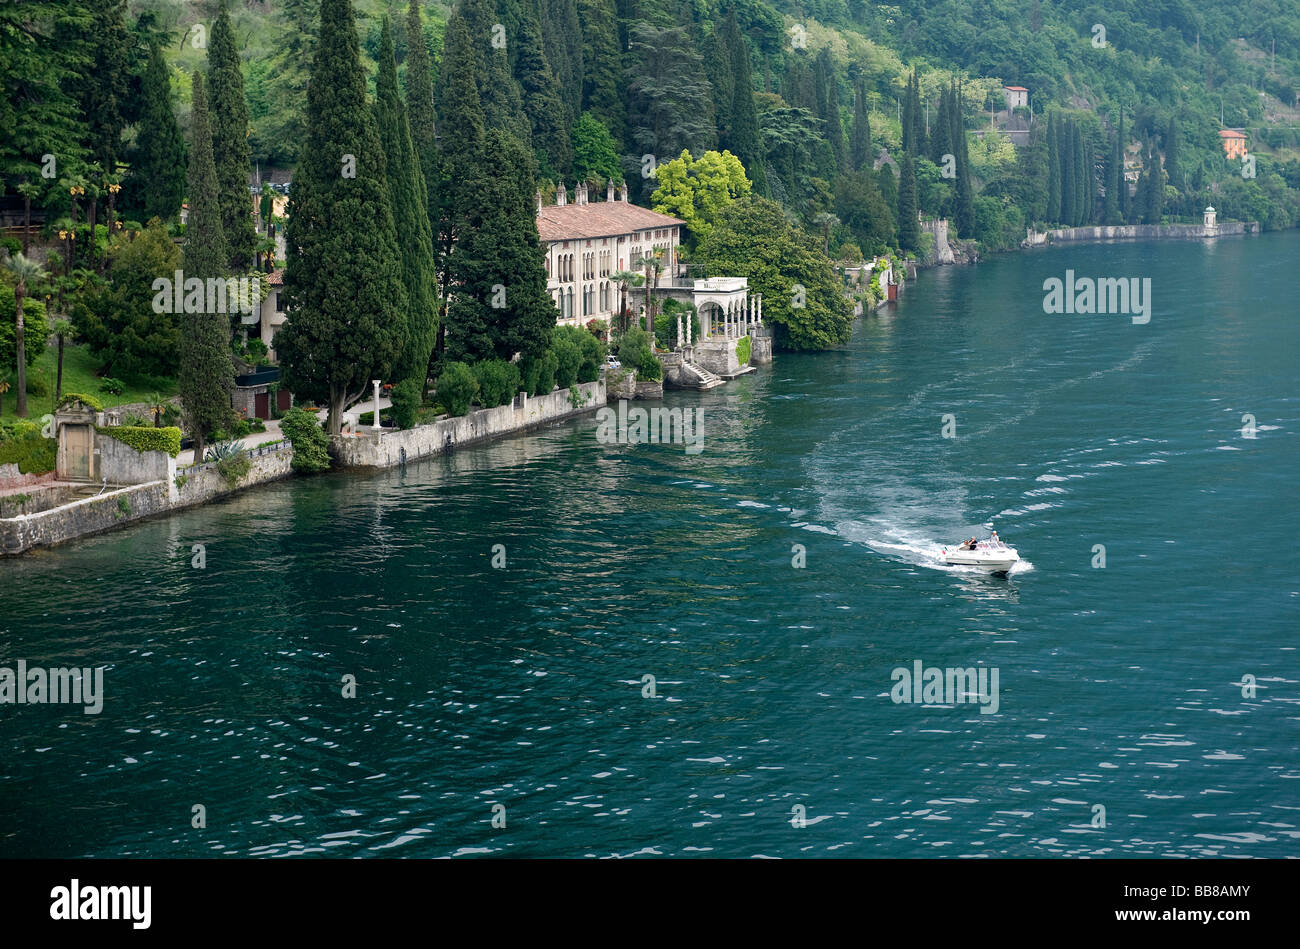 Villa monastero, Varenna, el lago de Como, Italia Foto de stock